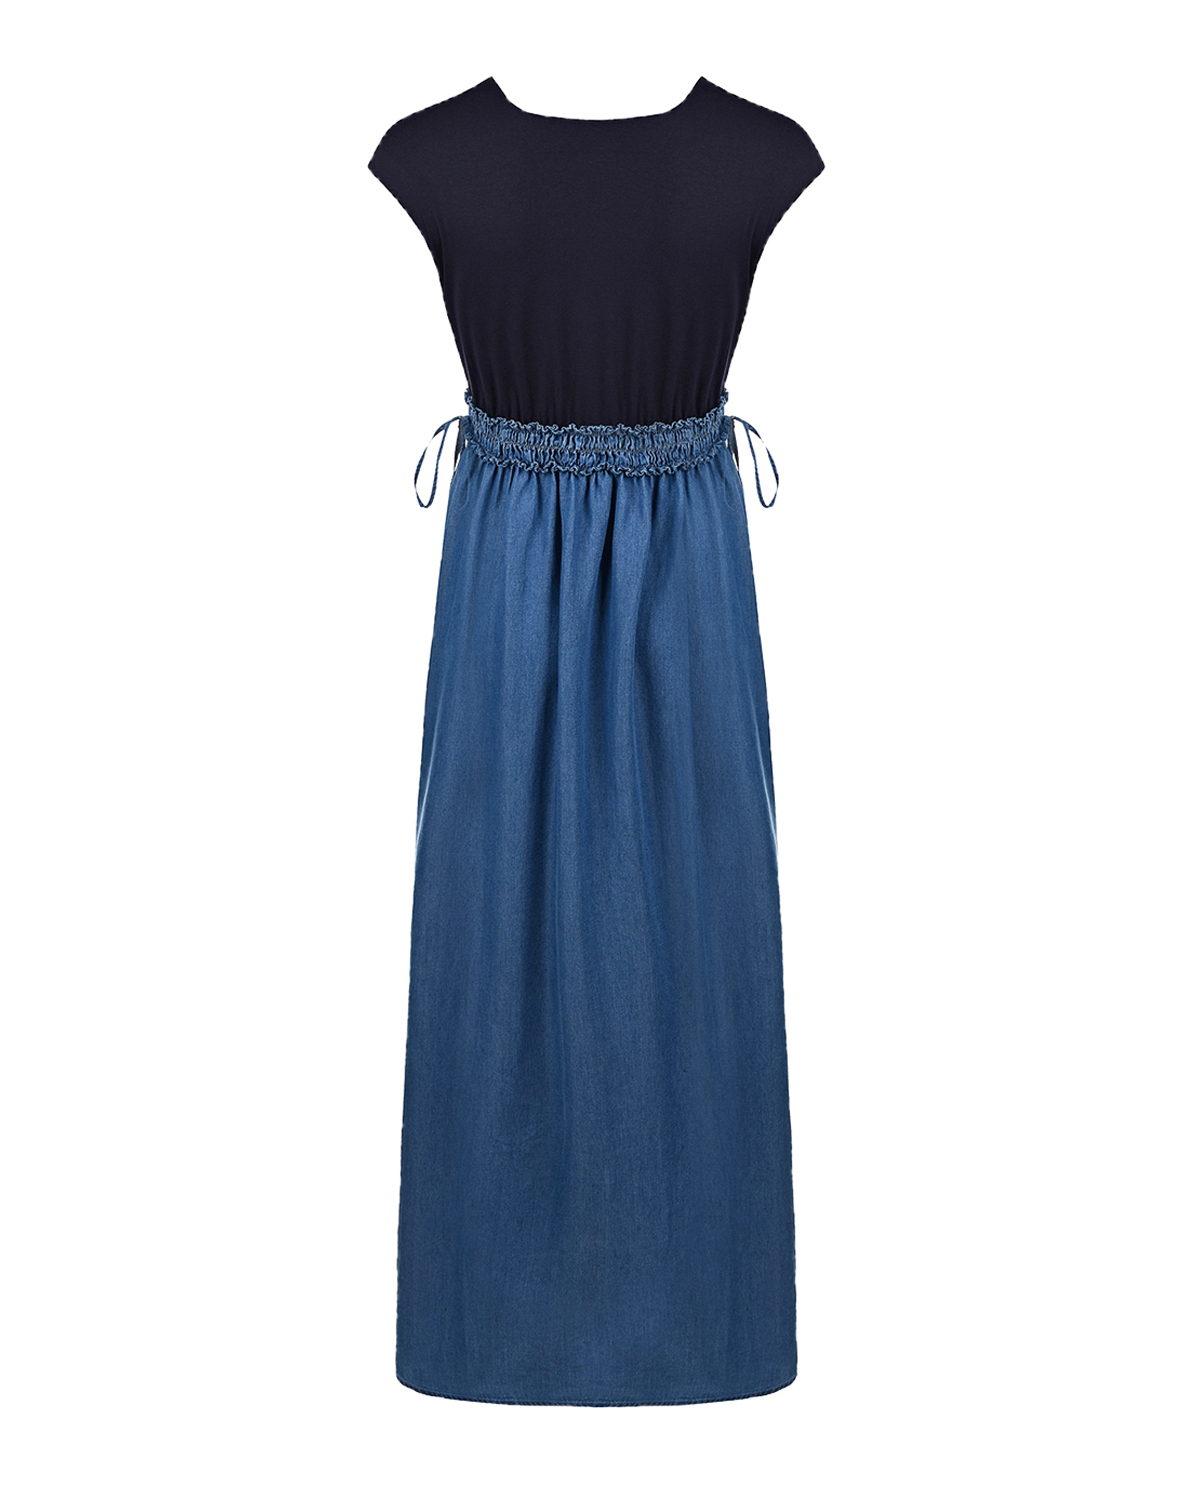 Платье с джинсовой юбкой Attesa, размер 38, цвет синий - фото 5